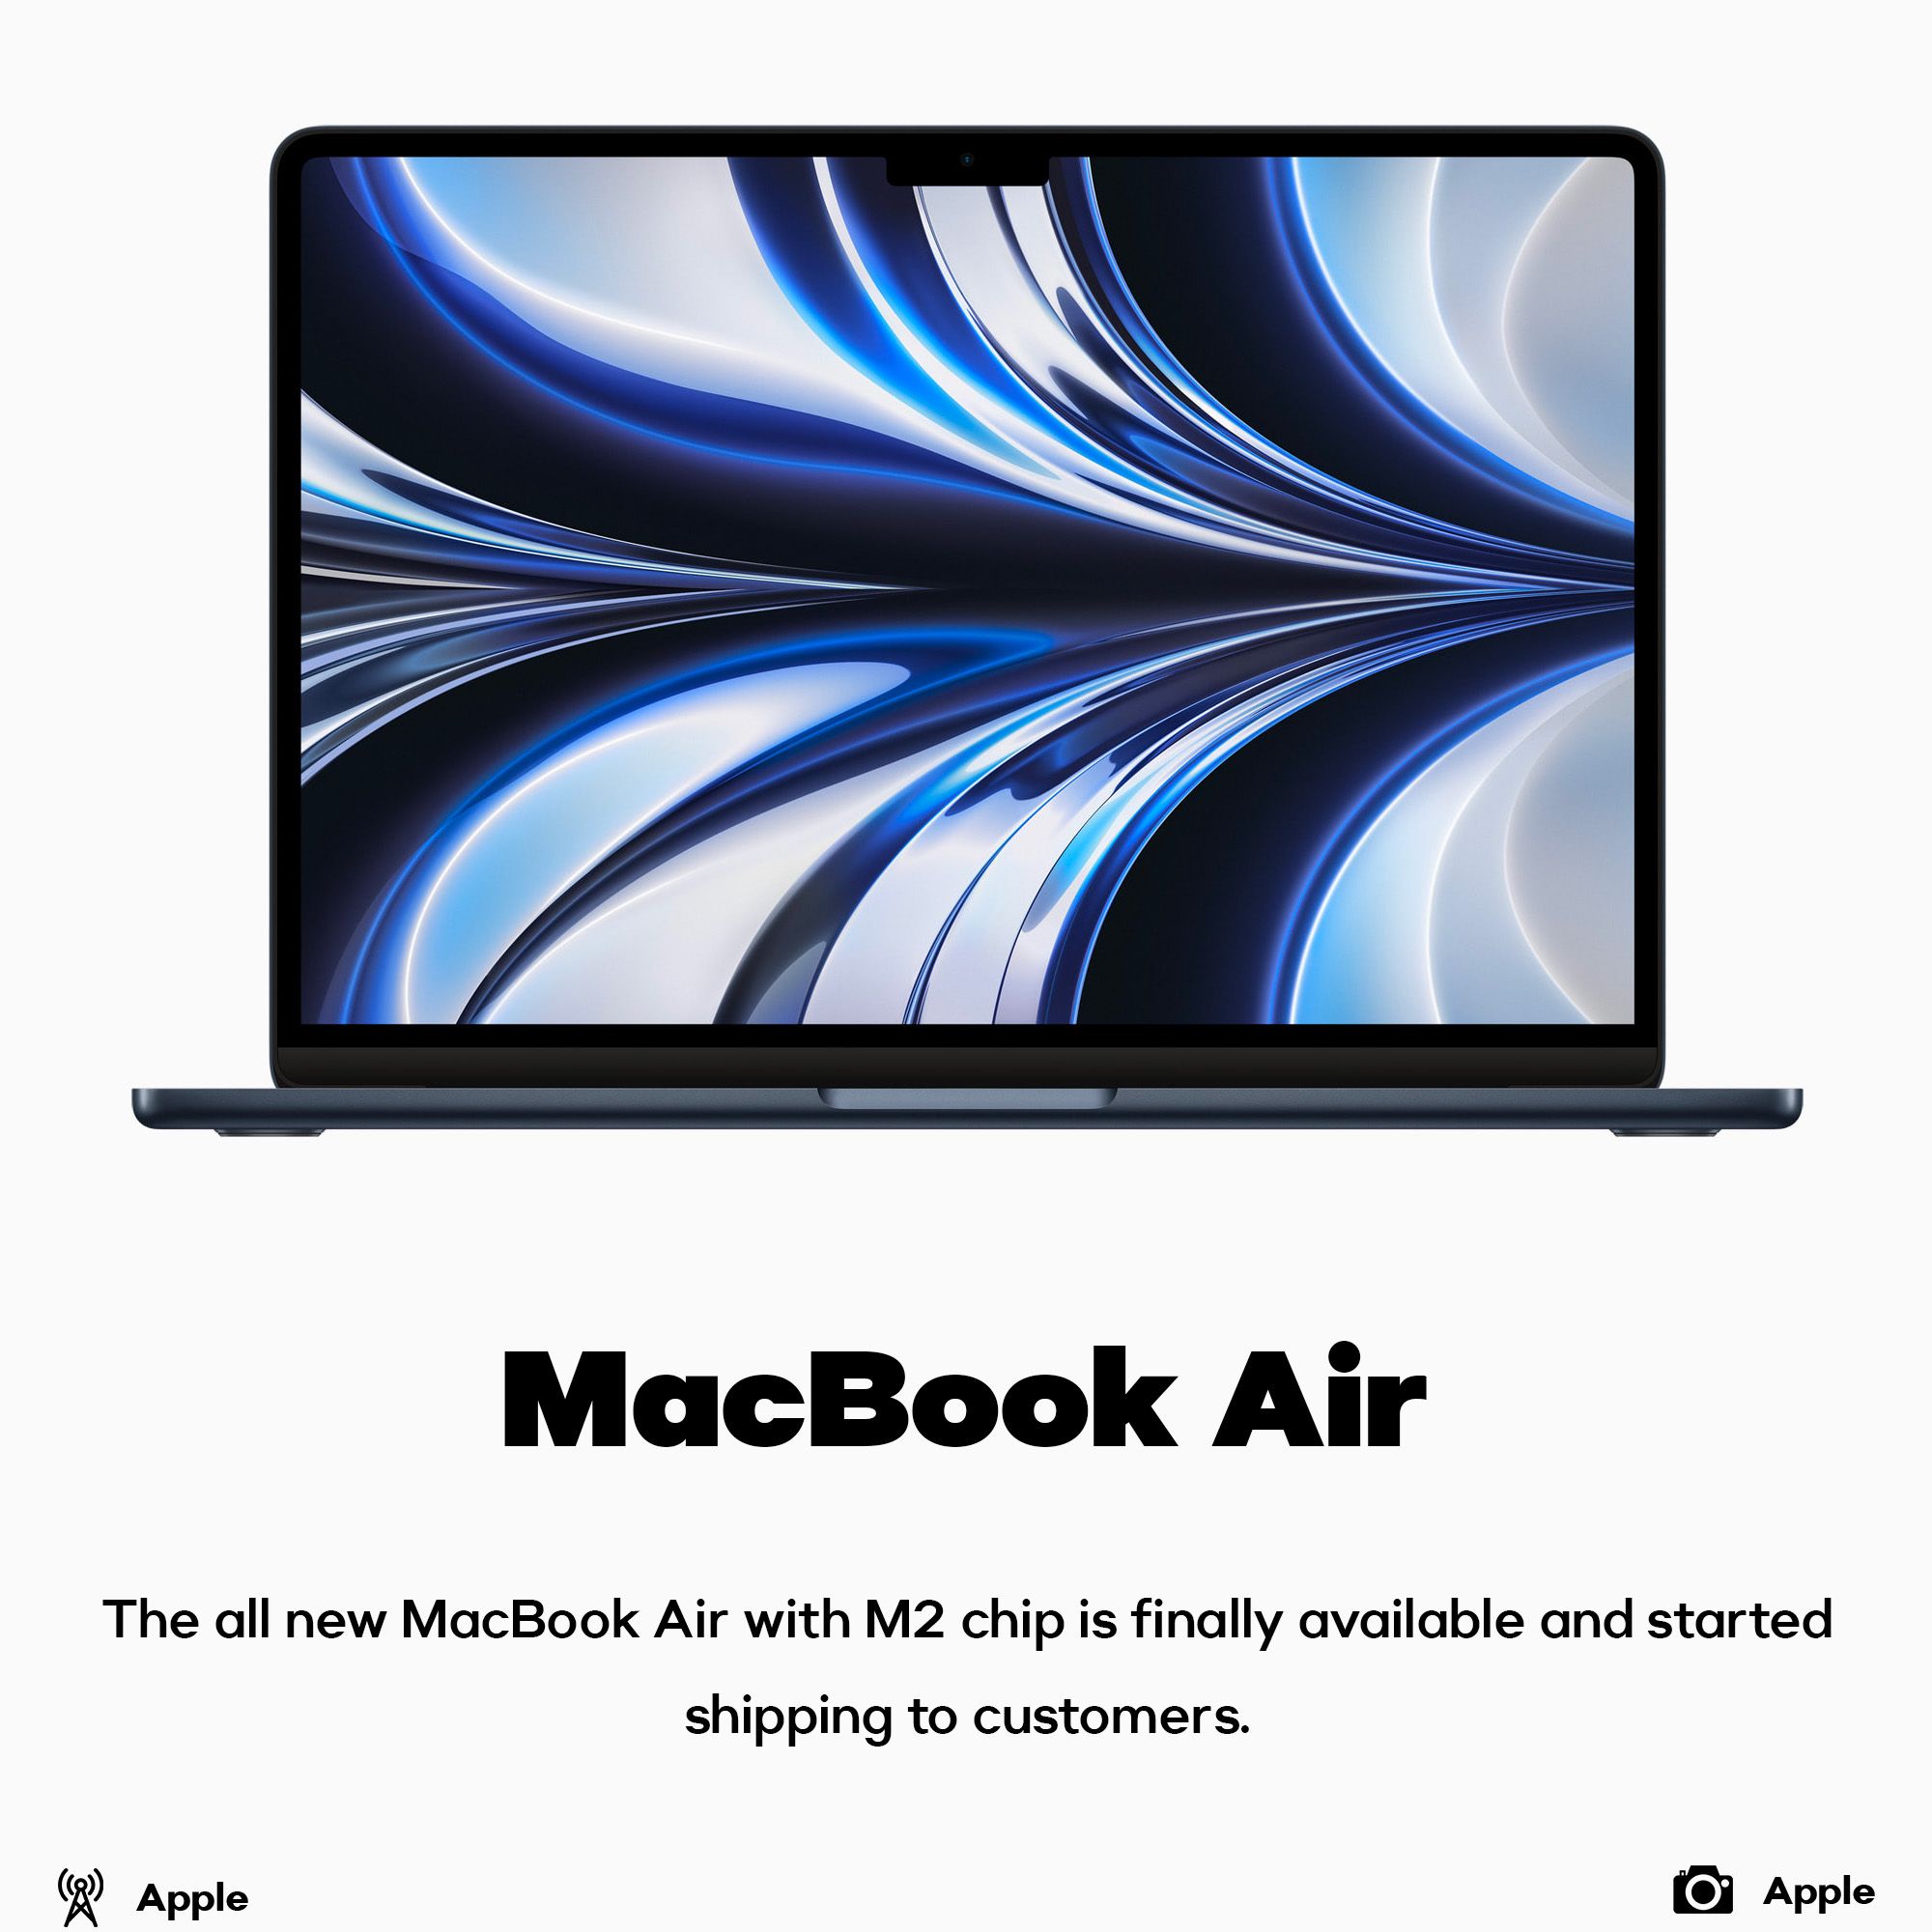 MacBook Air shipping